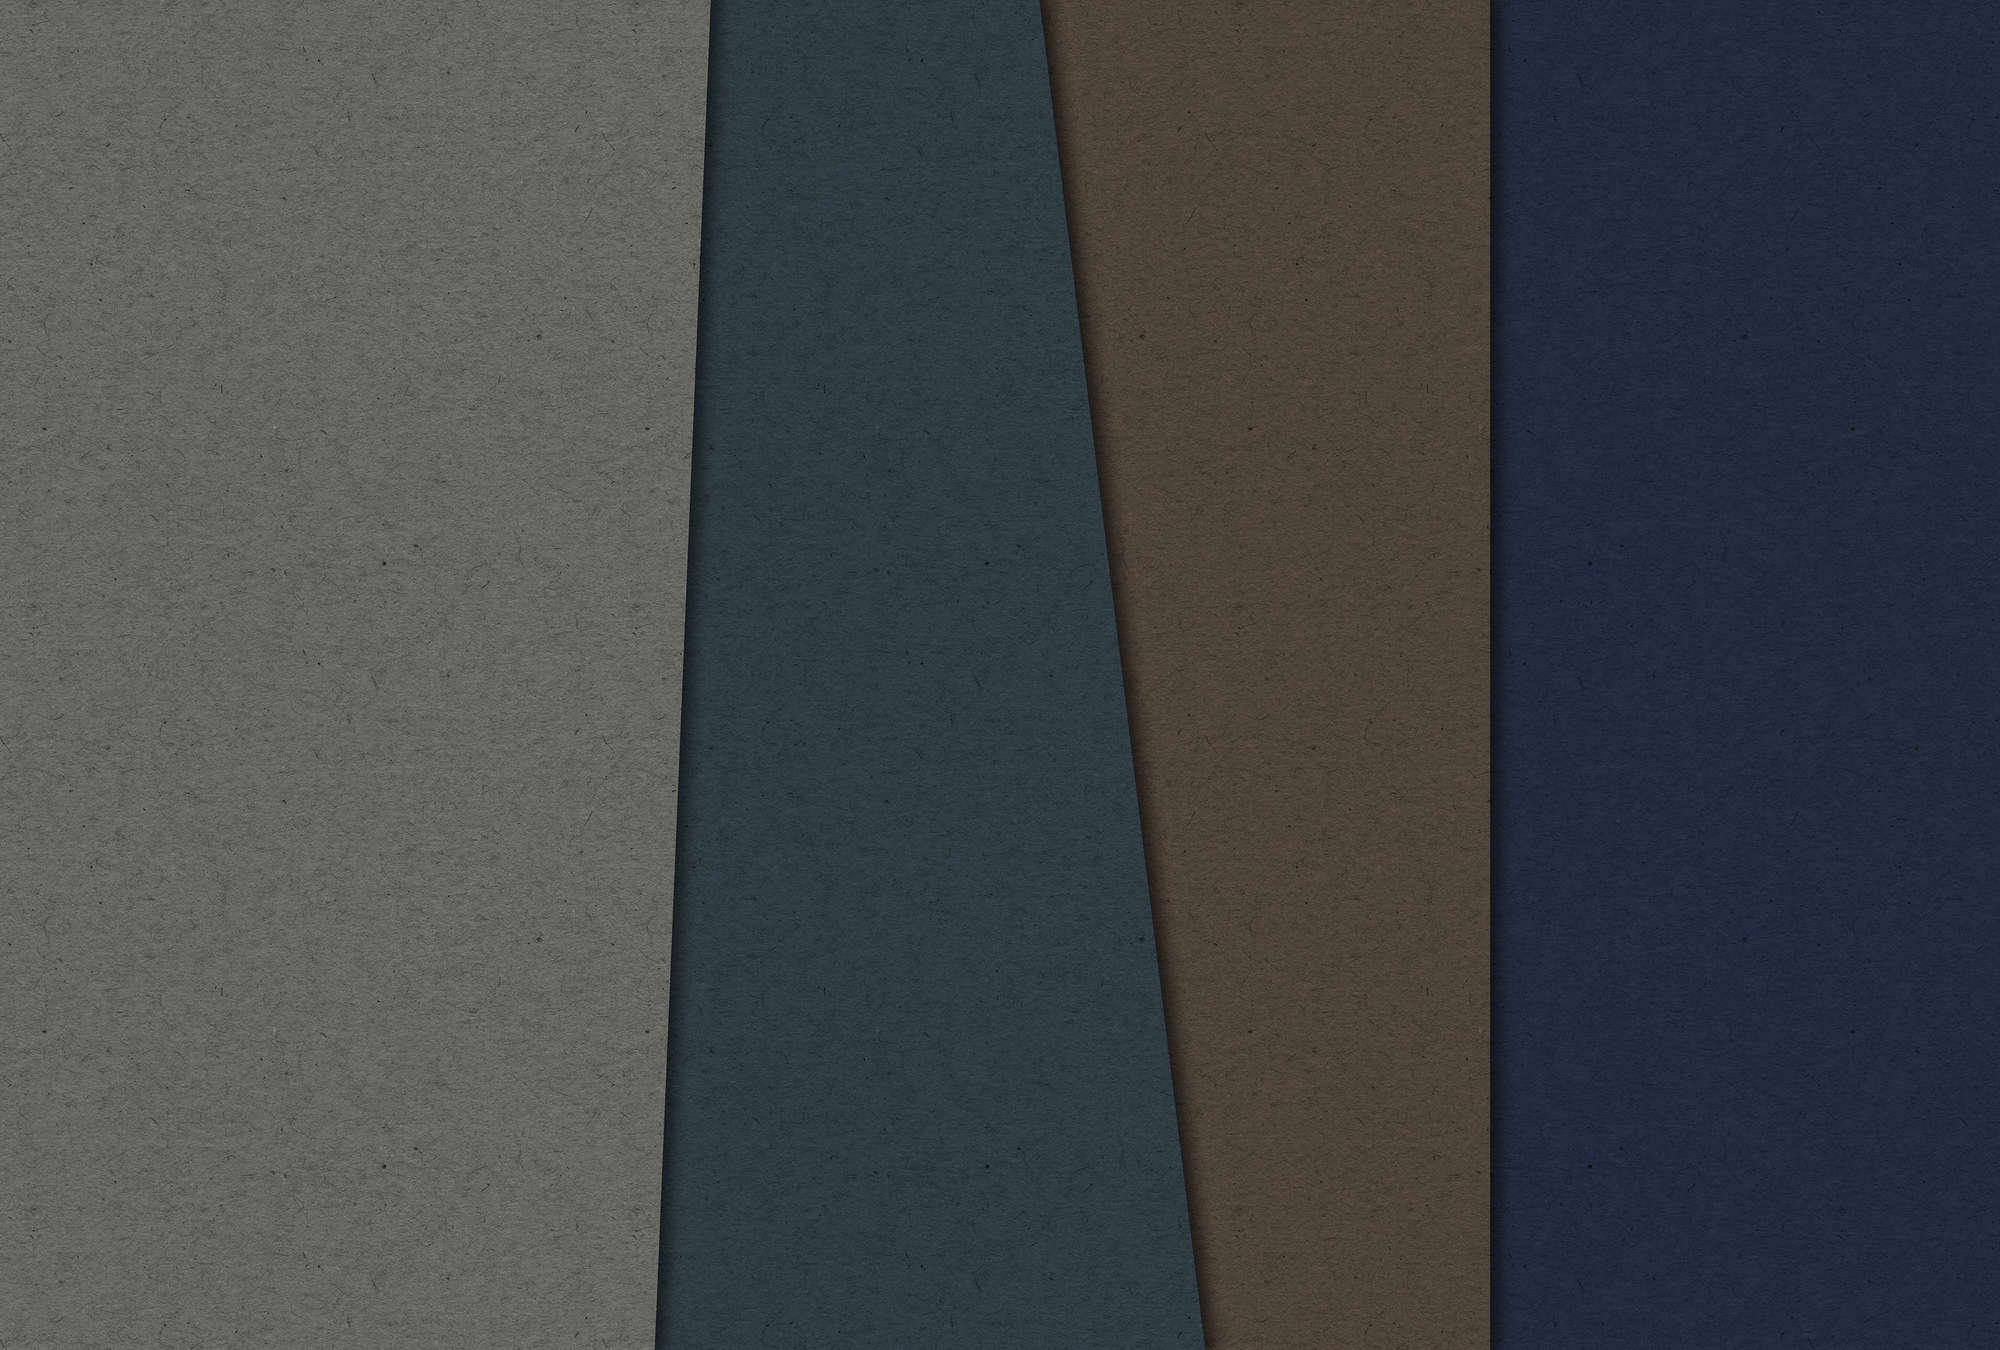             Gelaagd karton 2 - Fotobehang in kartonstructuur met donkere kleurvlakken - Blauw, Bruin | Mat glad vlies
        